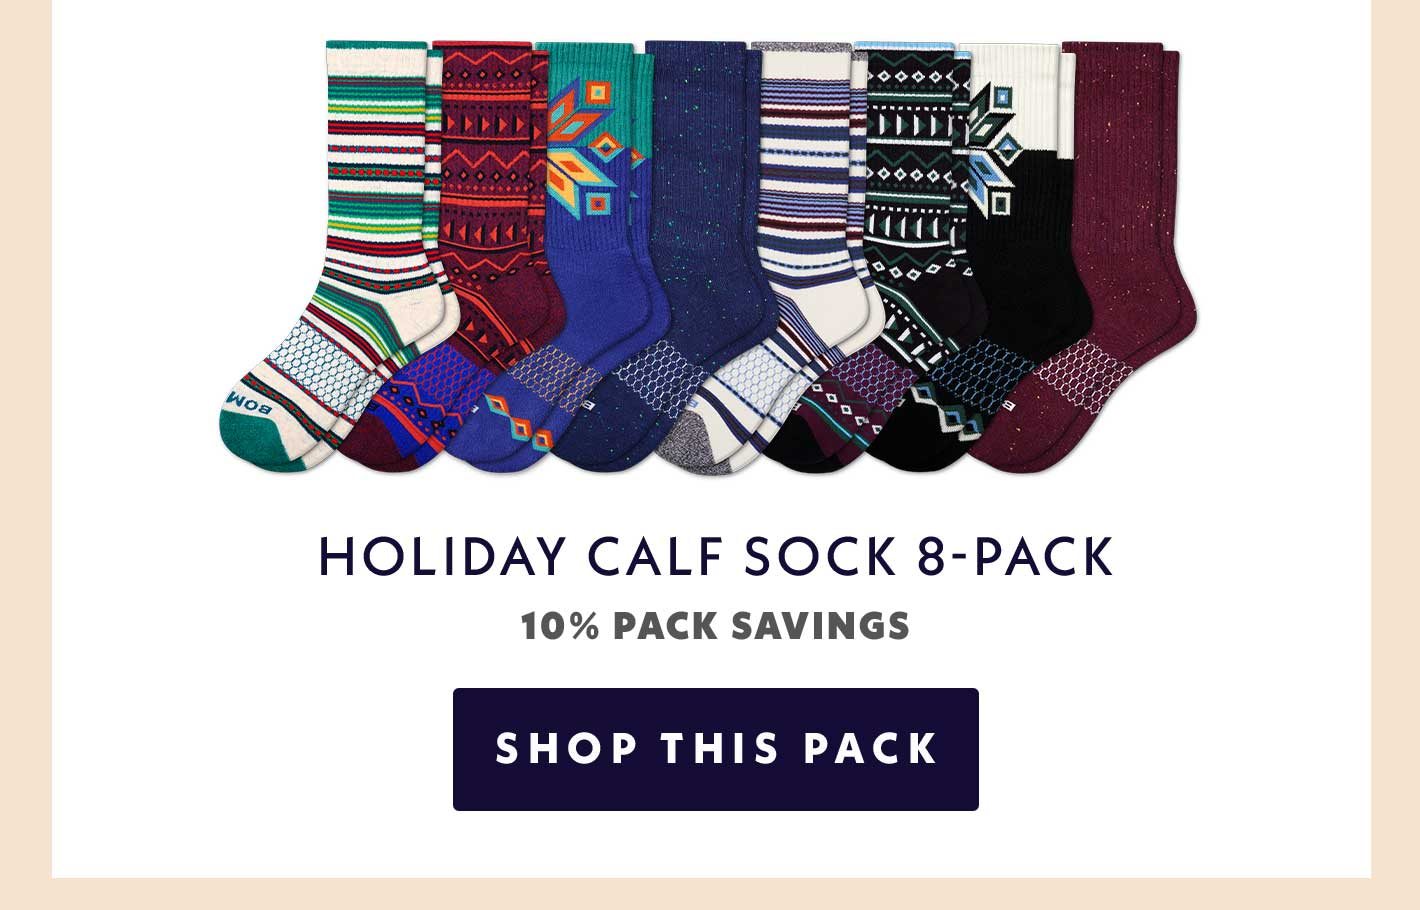 Holiday Calf Sock 8 Pack